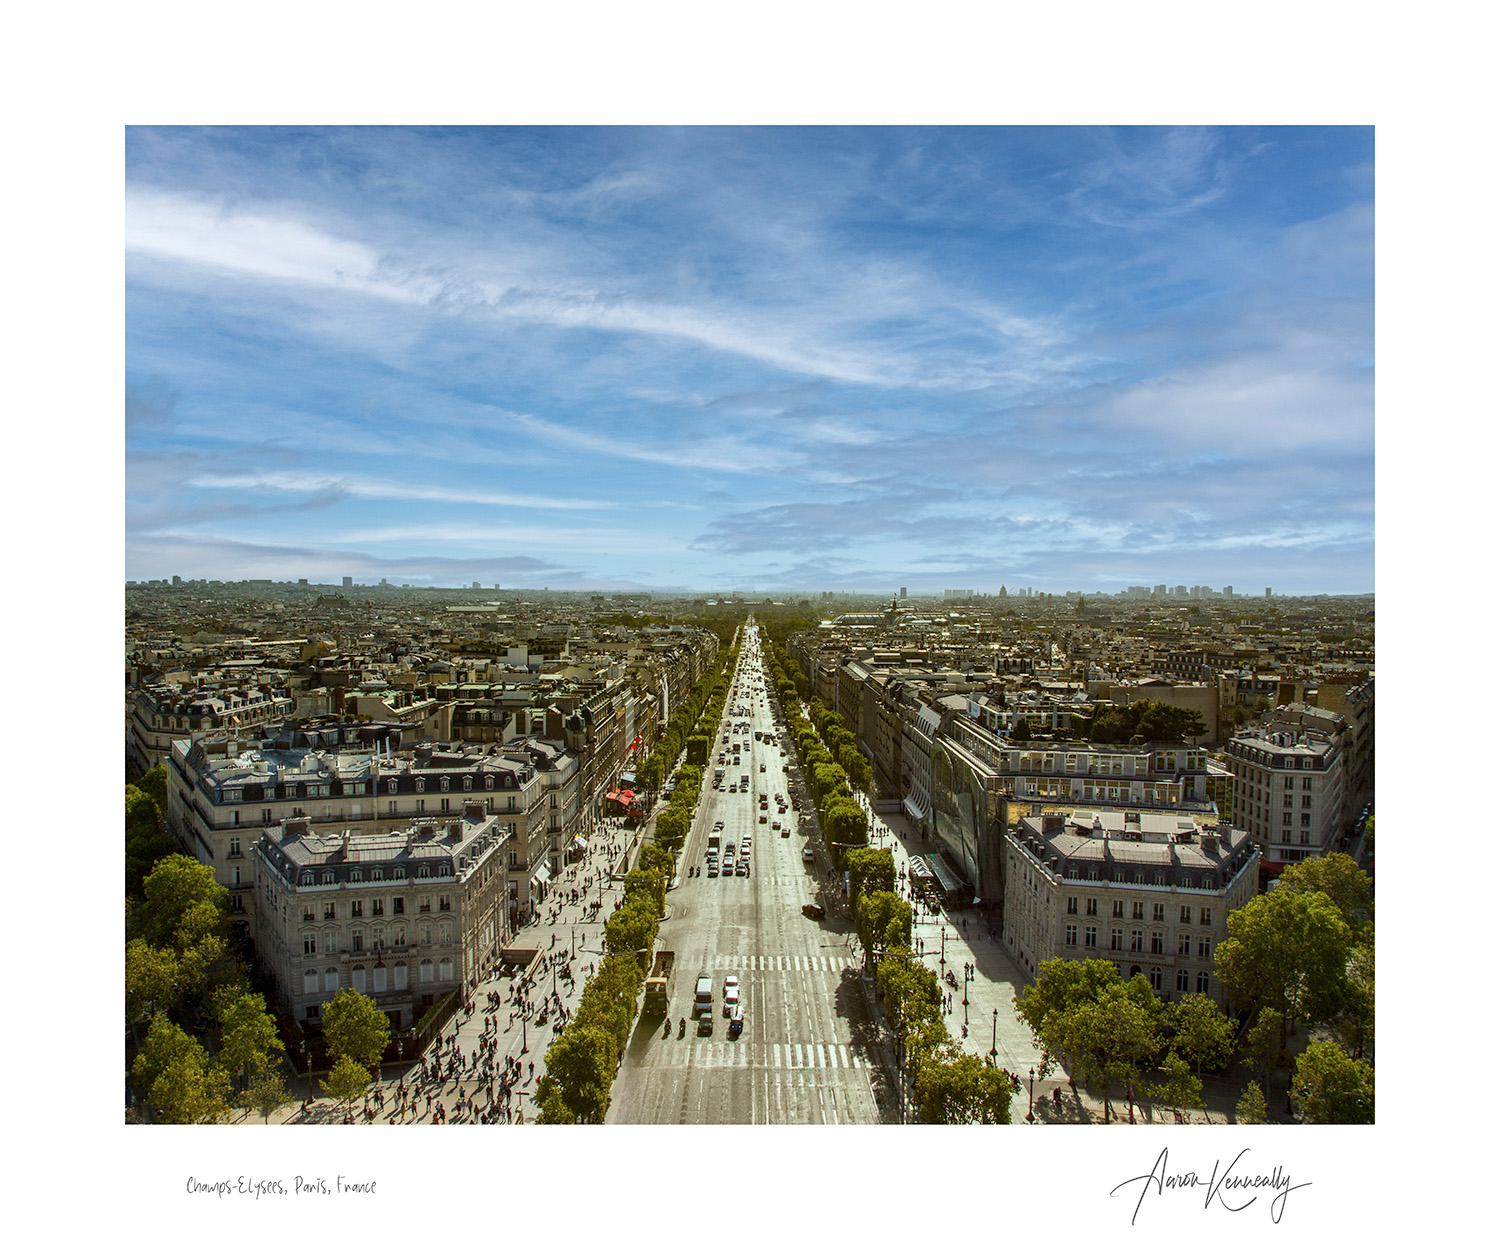 Champs-Elysees, Paris, France